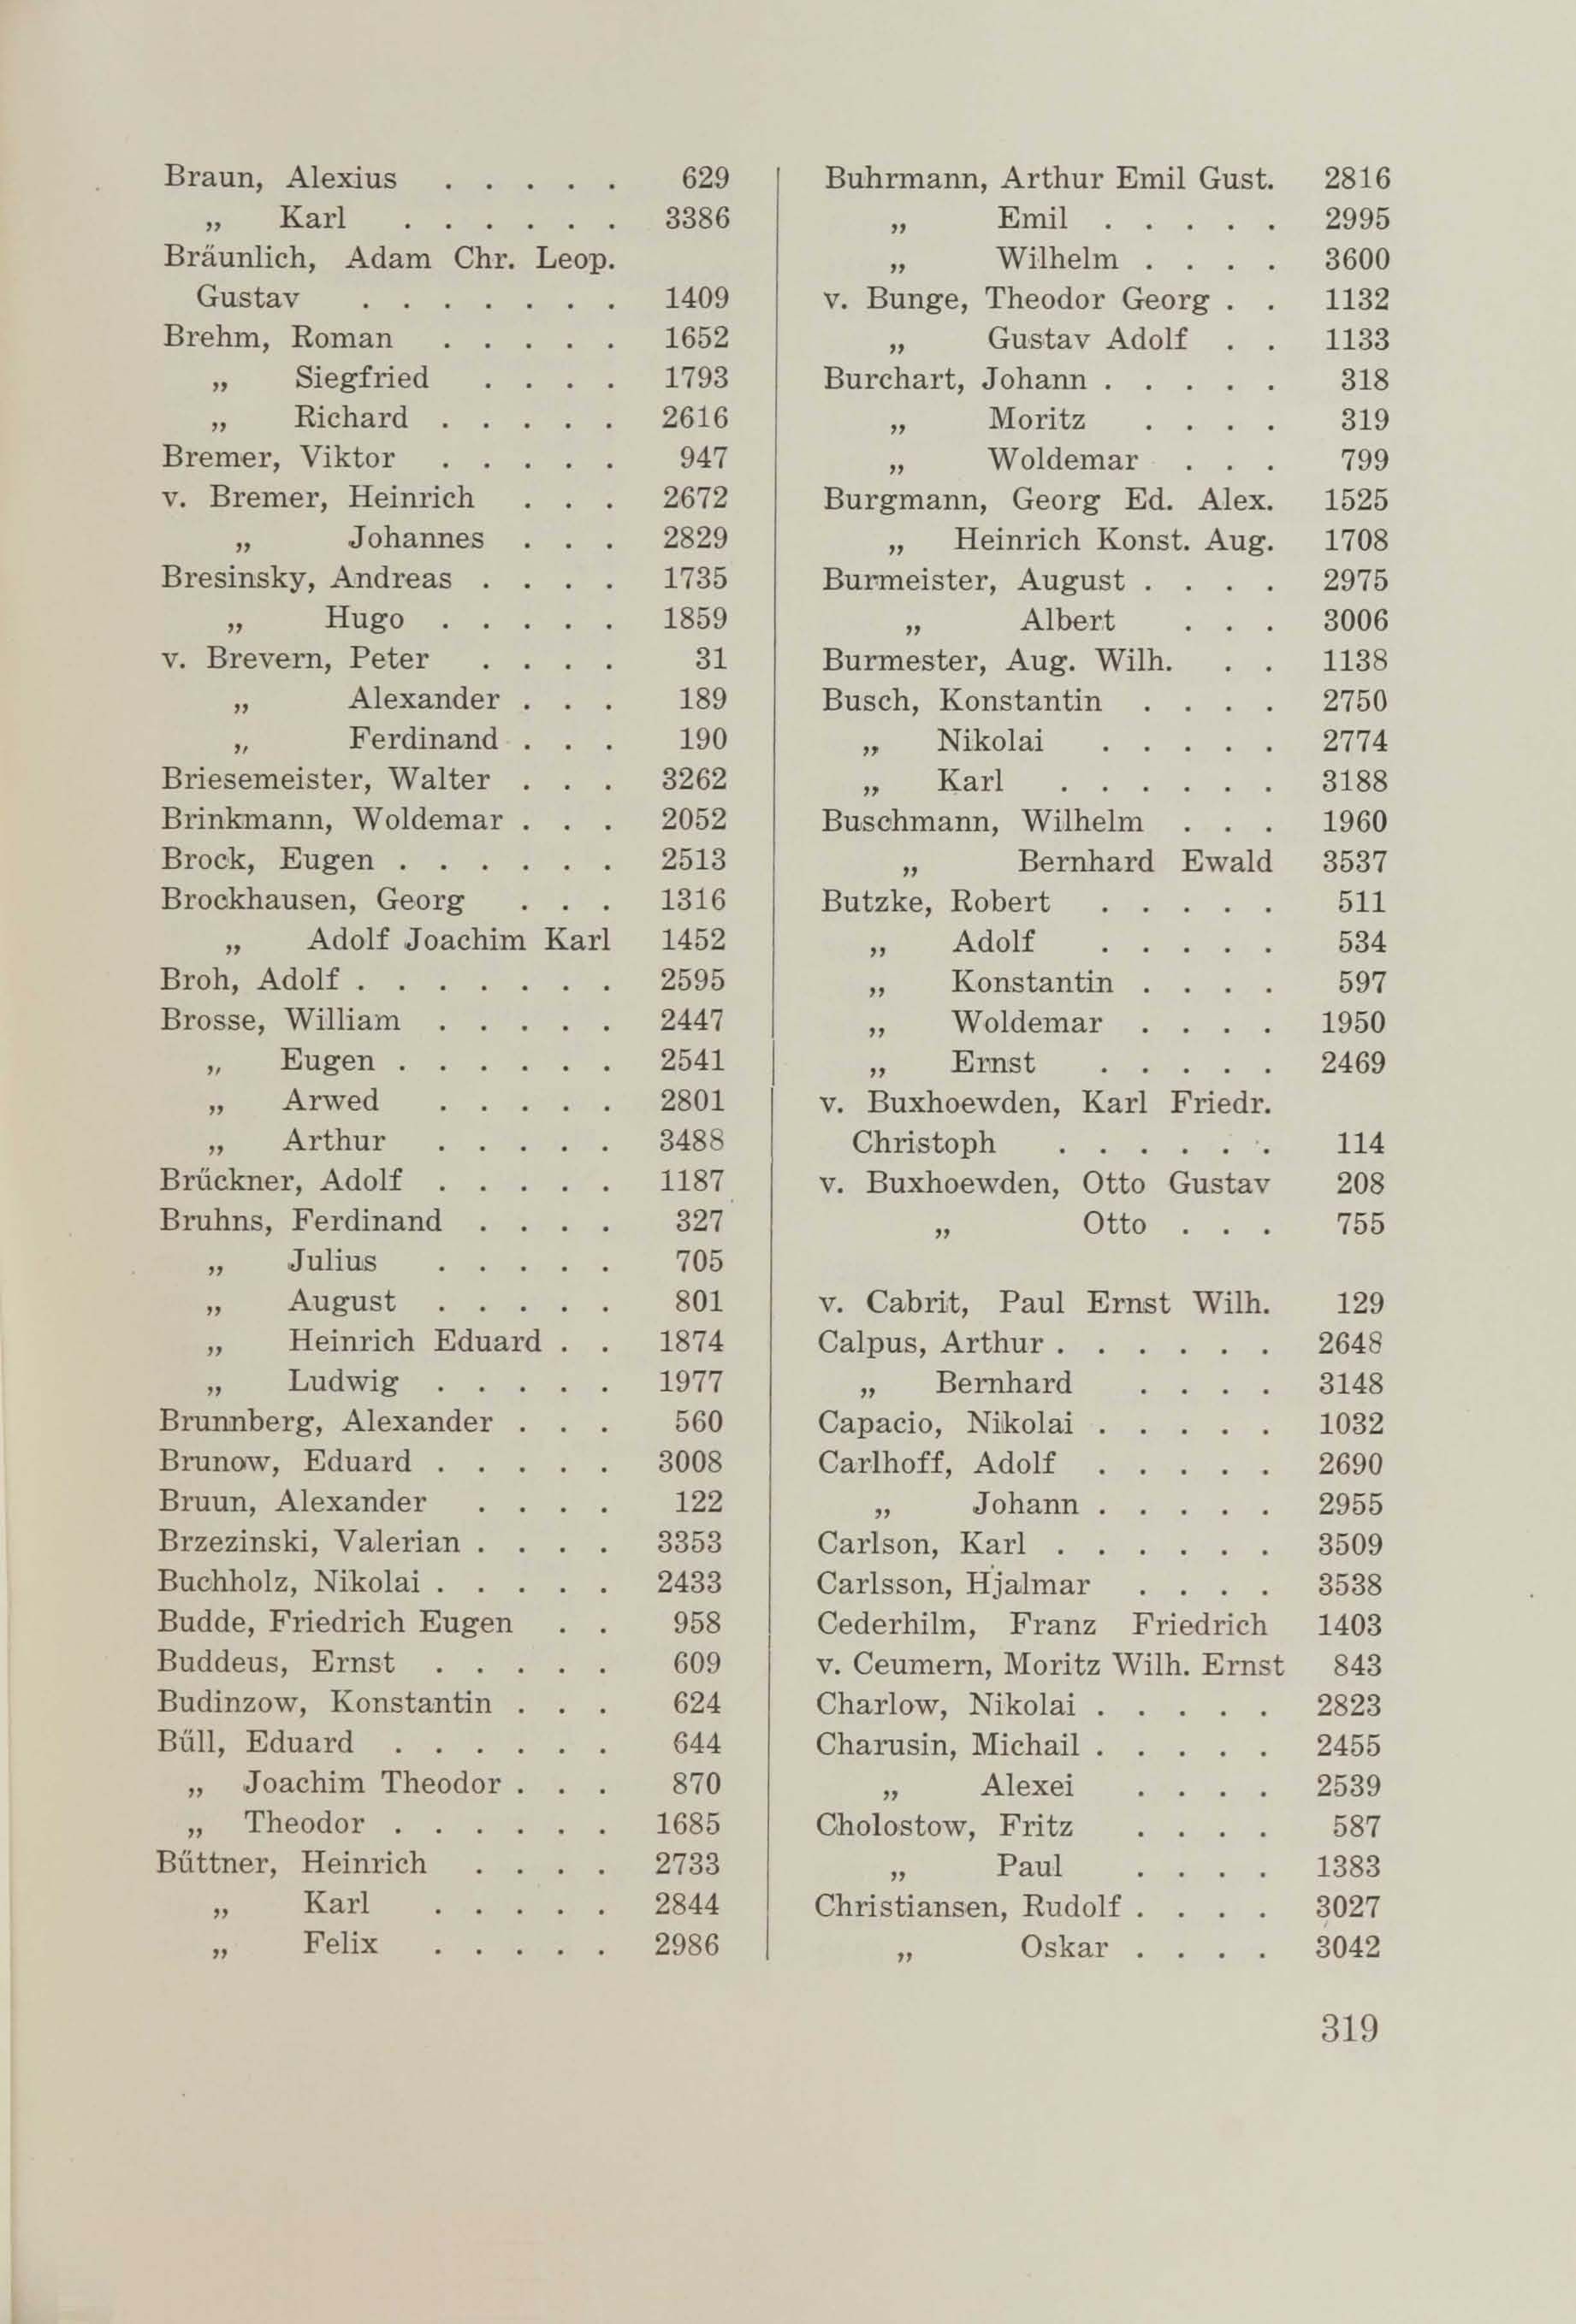 Schüler-Verzeichnis des Revalschen Gouvernements-Gymnasiums 1805–1890 (1931) | 329. (319) Main body of text